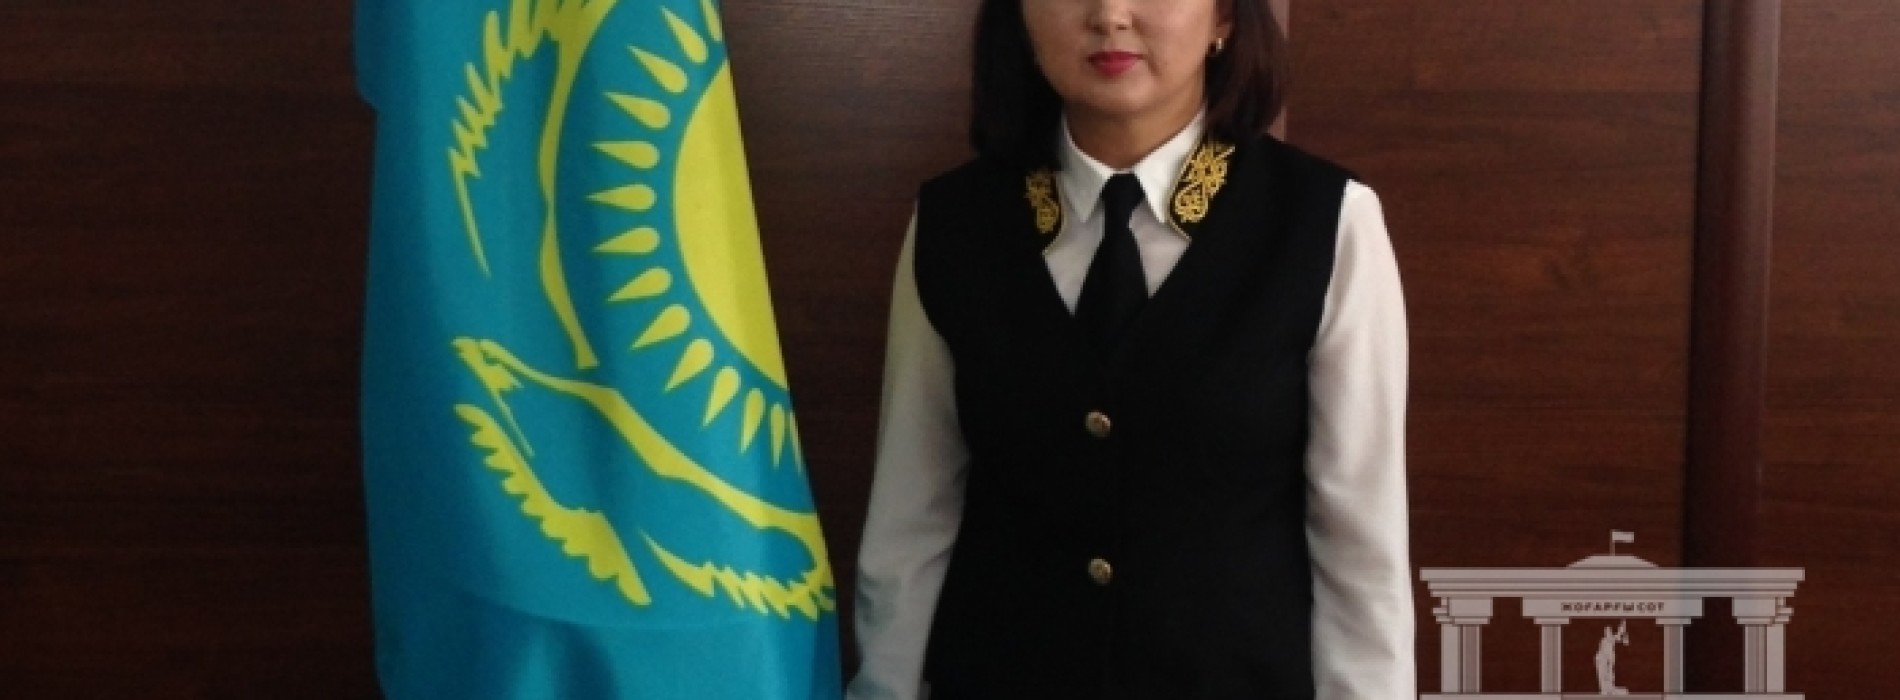 Единая форма одежды для сотрудников суда введена в Алматинской области